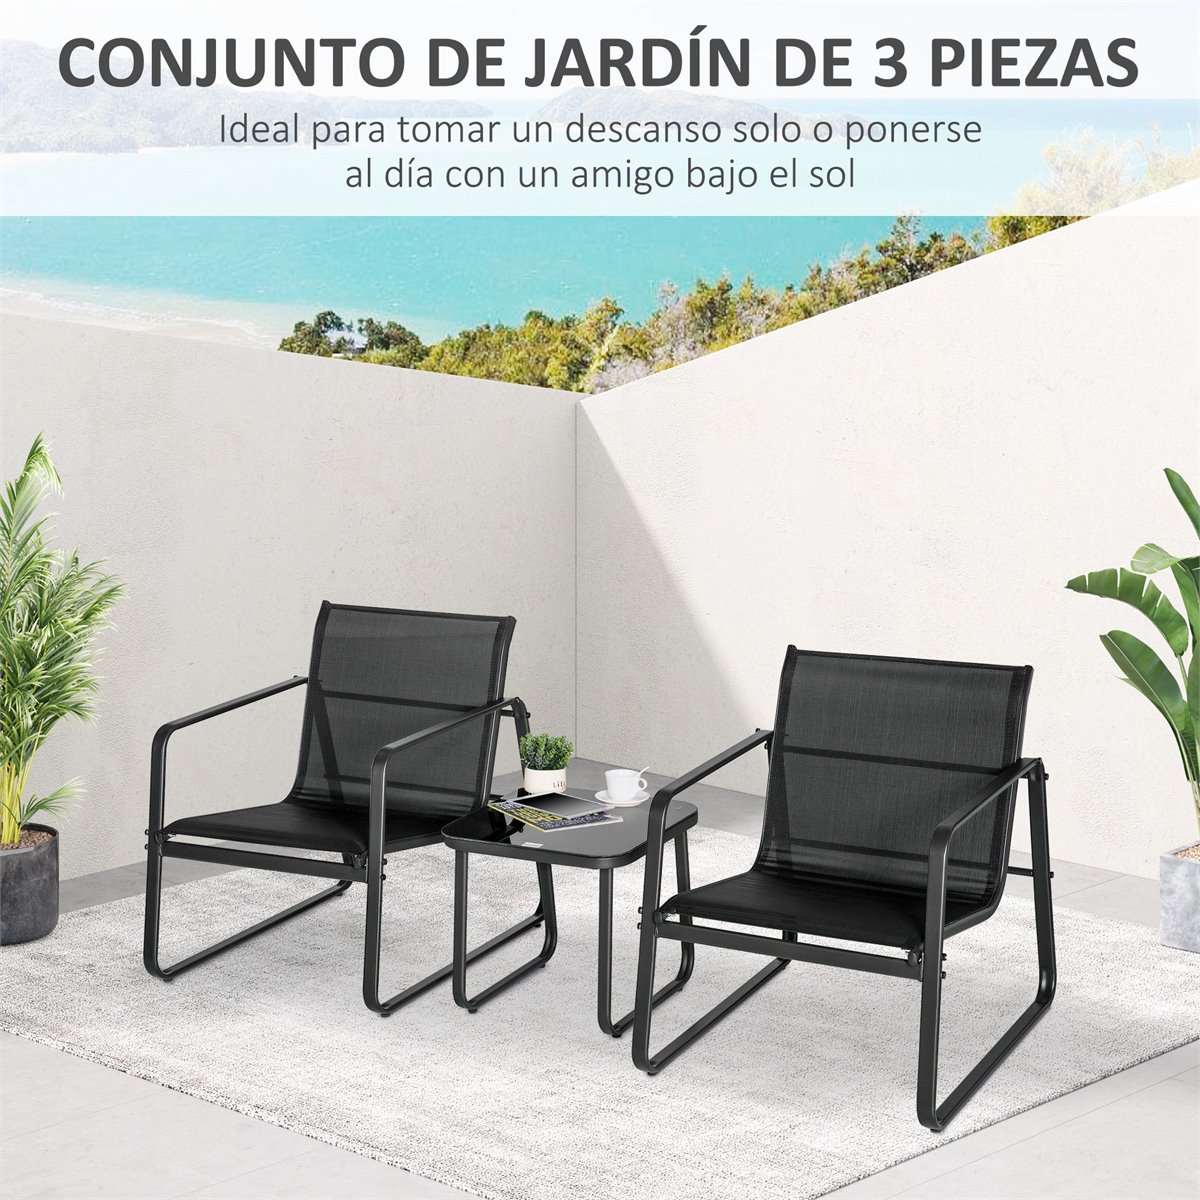 Conjuntos de mesas y sillas de jardín - Conforama